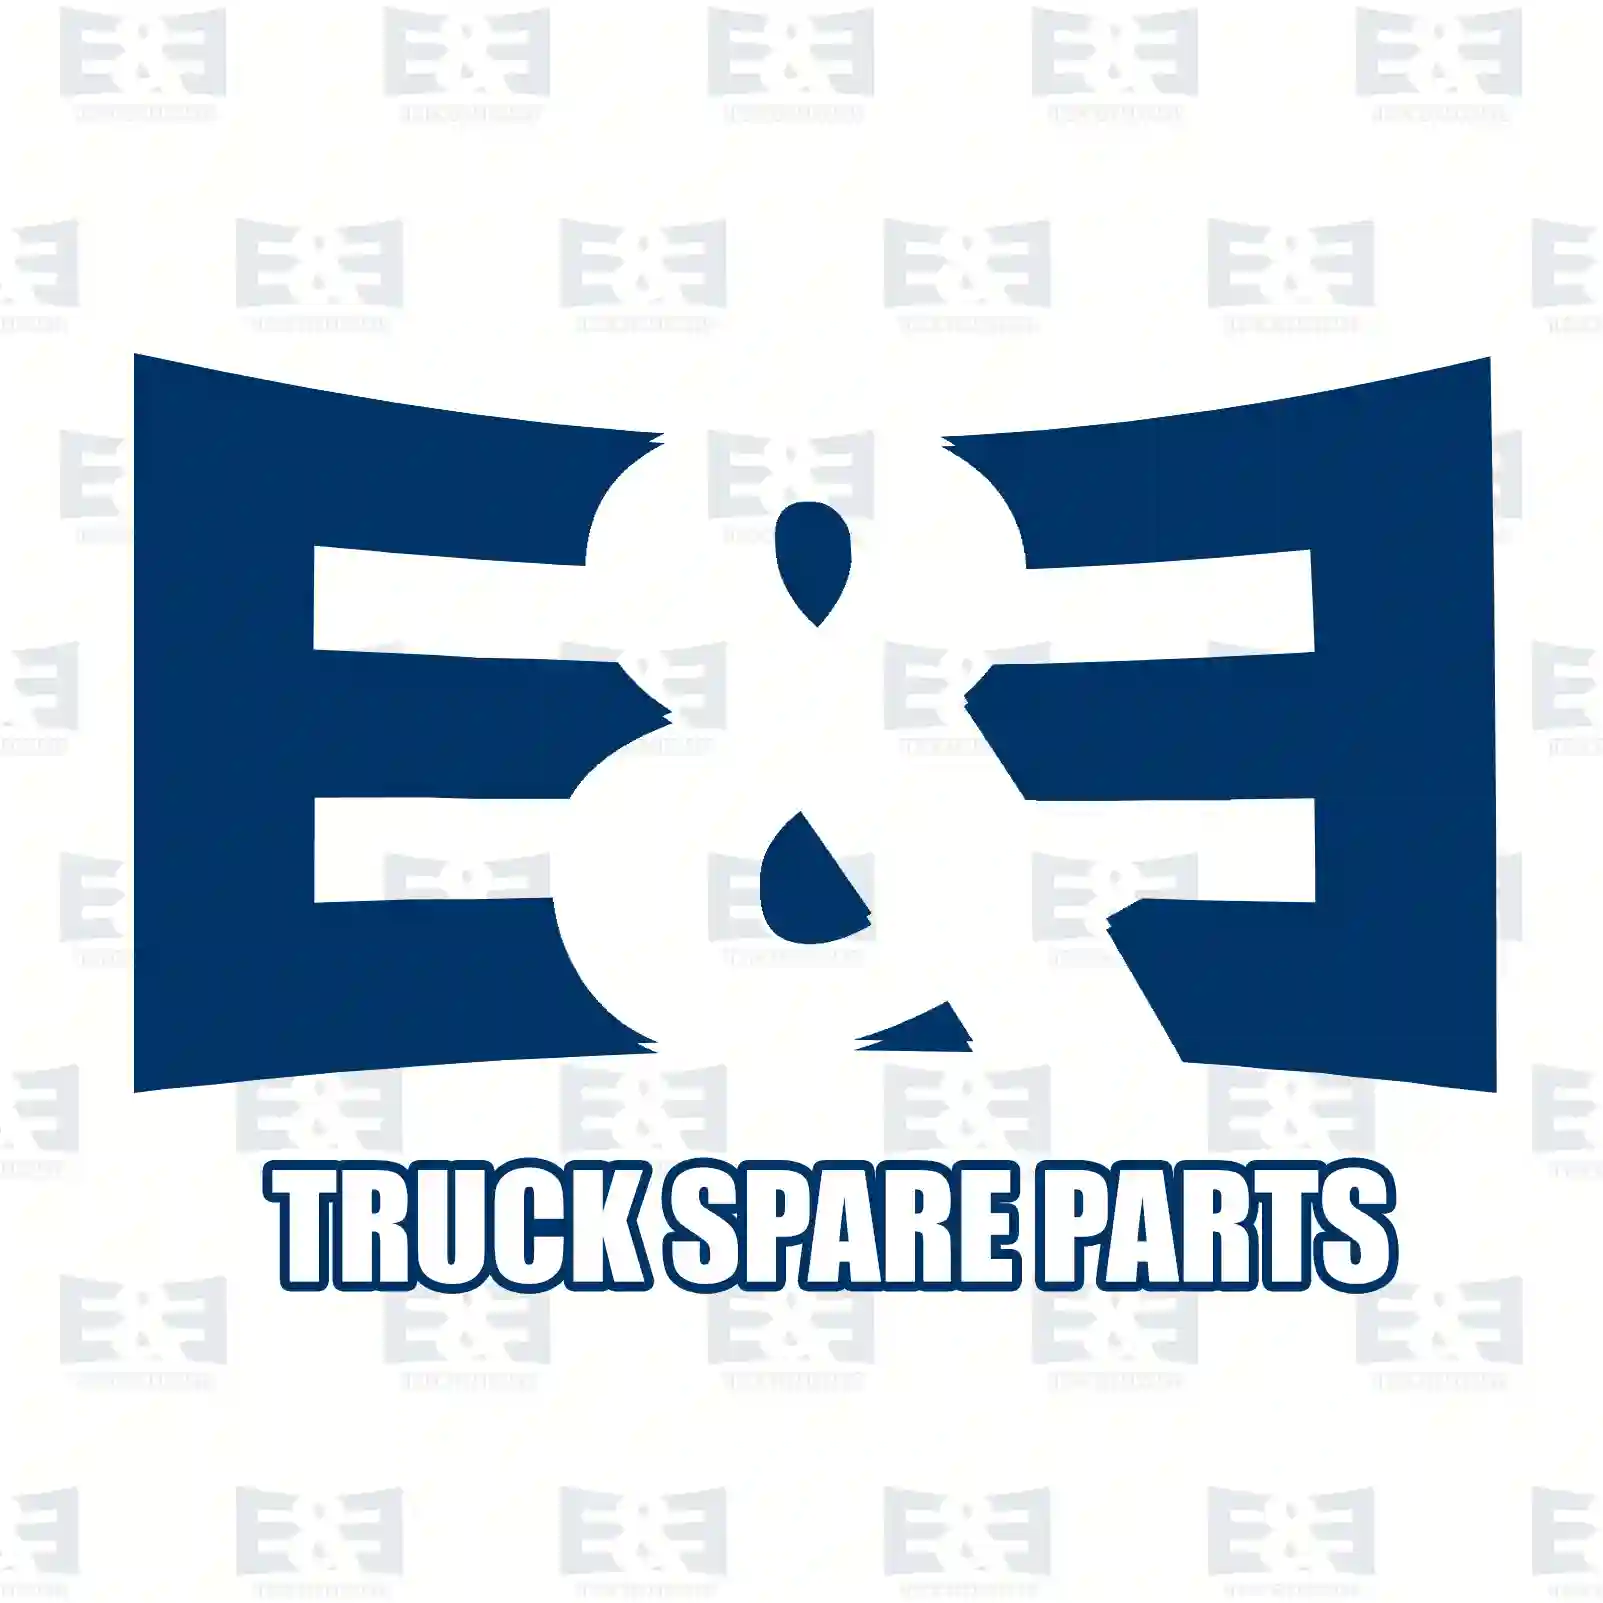 Servo pump, right turn, 2E2205371, 5001865386, 50106 ||  2E2205371 E&E Truck Spare Parts | Truck Spare Parts, Auotomotive Spare Parts Servo pump, right turn, 2E2205371, 5001865386, 50106 ||  2E2205371 E&E Truck Spare Parts | Truck Spare Parts, Auotomotive Spare Parts